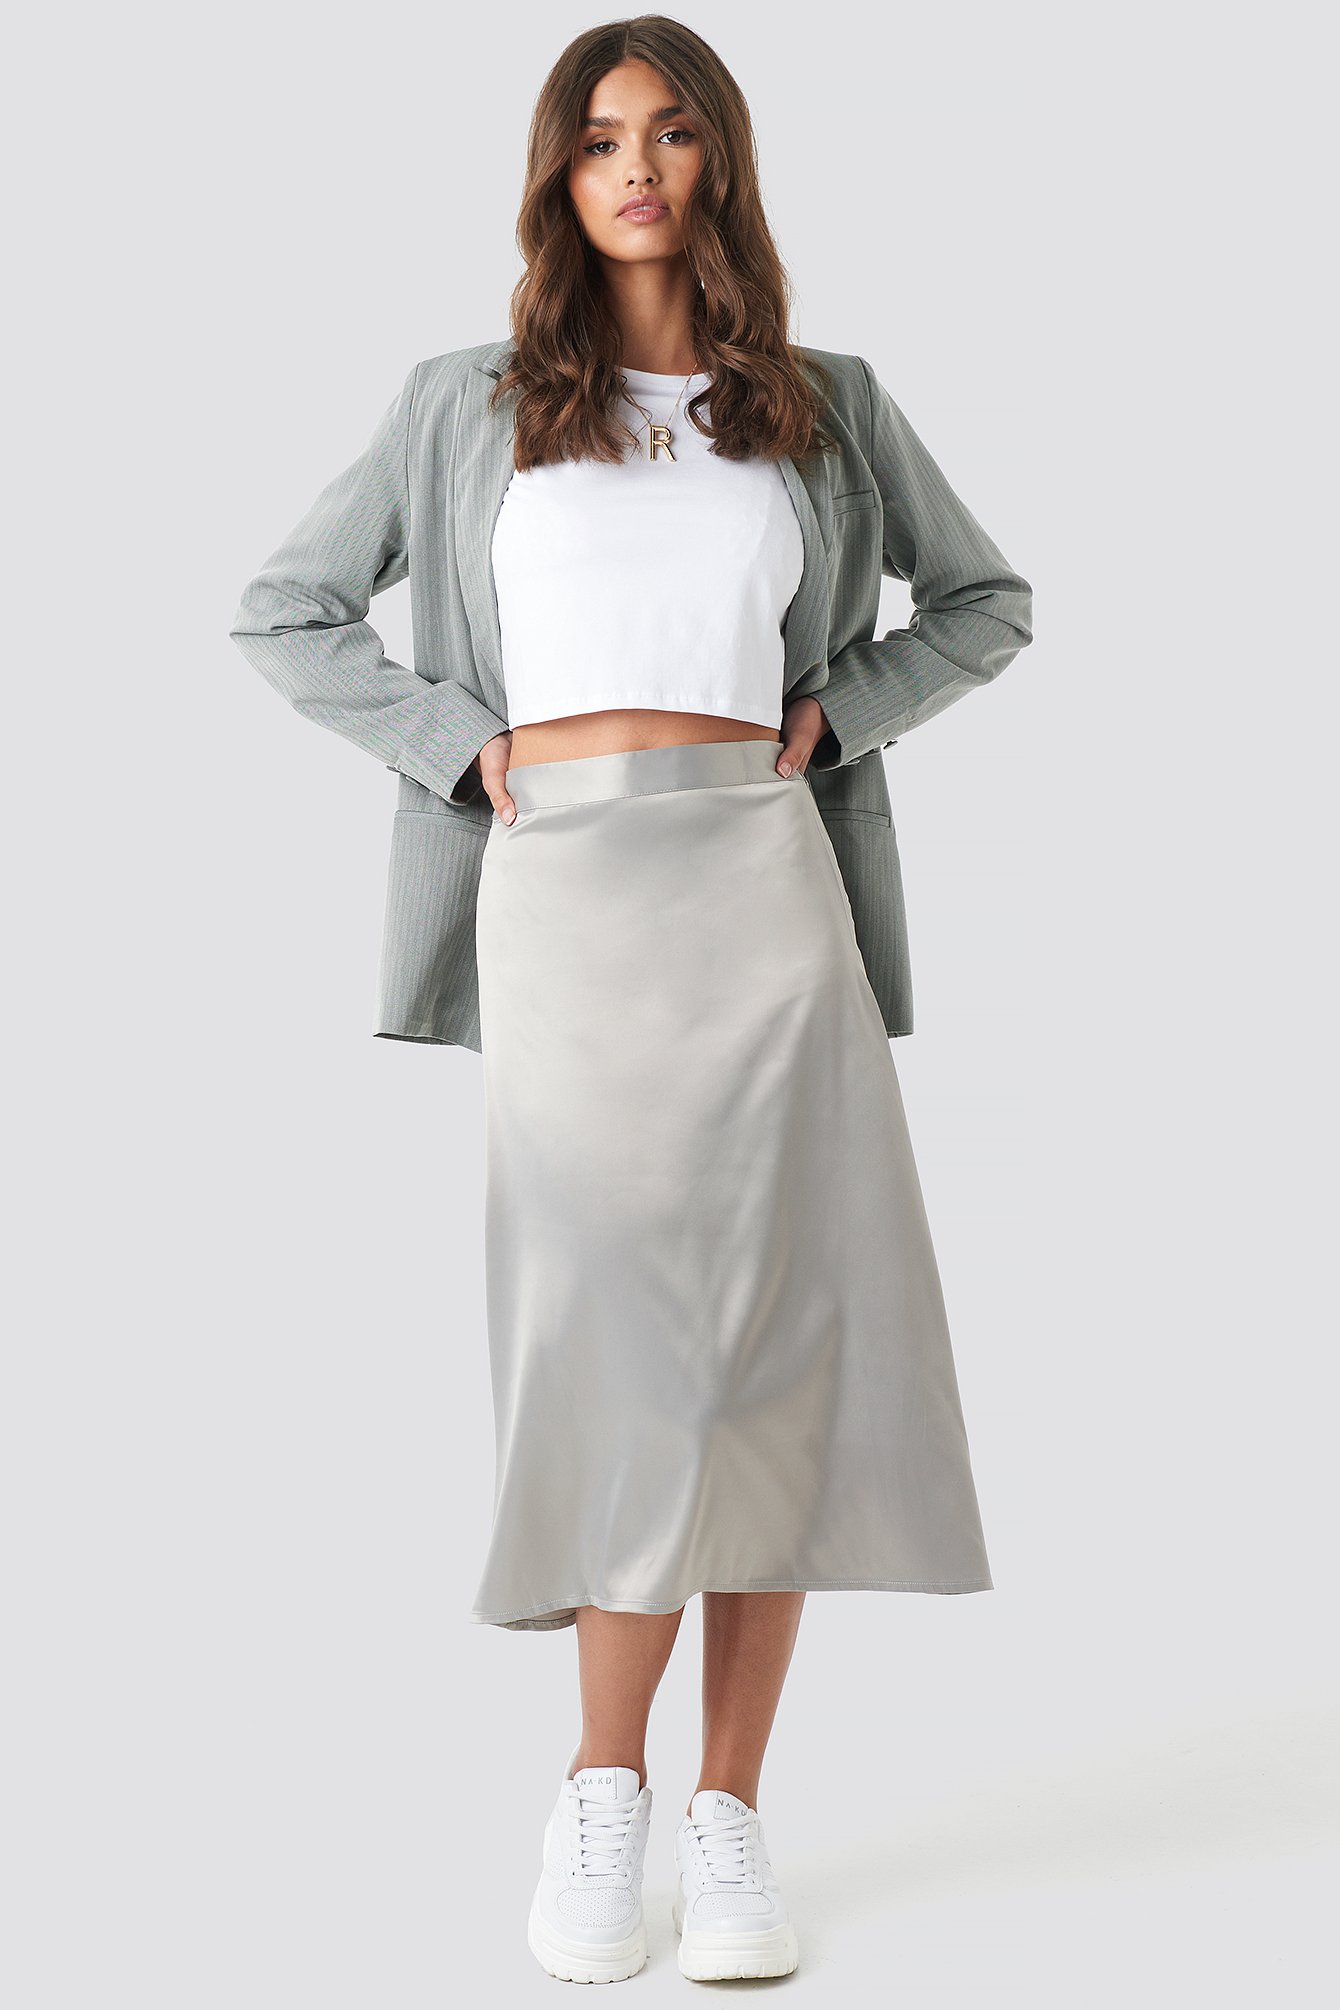 Recycled Satin Bias Cut Maxi Skirt | Satin maxi skirt, Maxi skirt, Satin  maxi